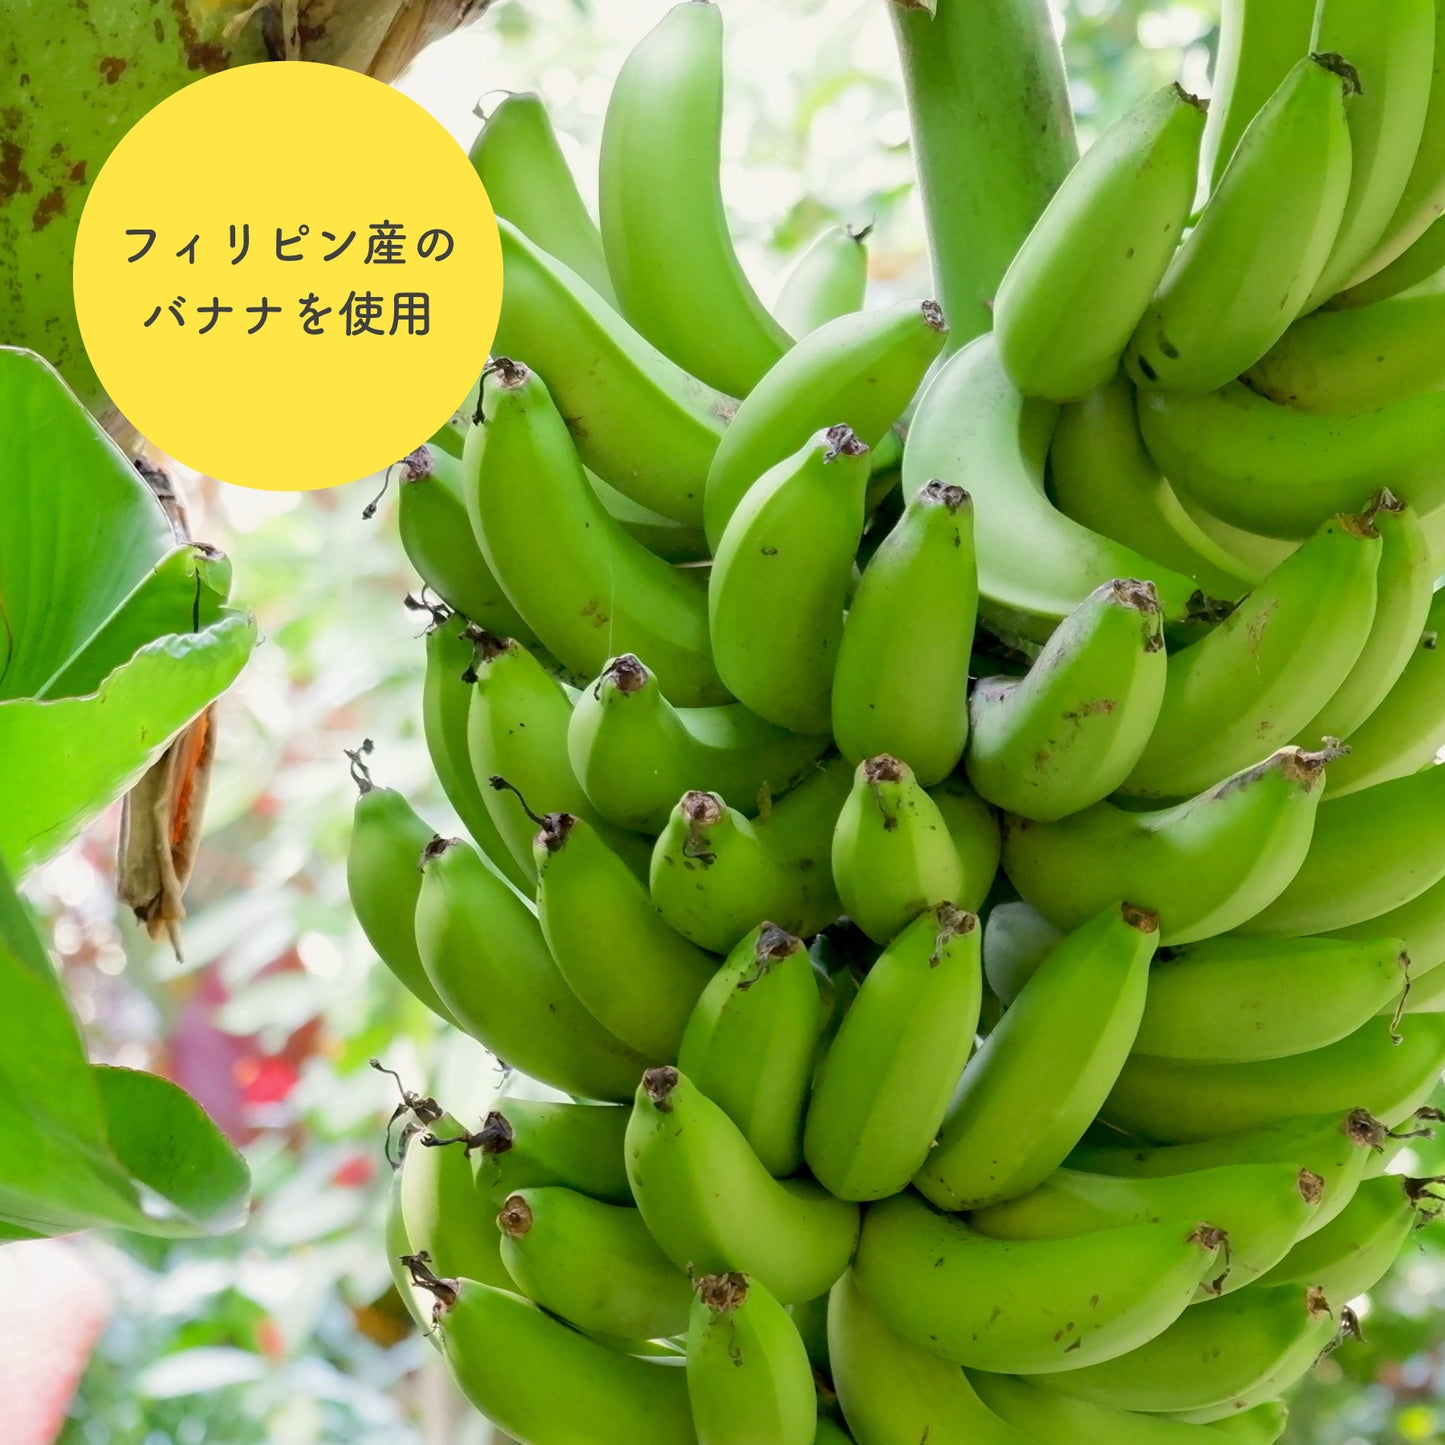 塩バナナチップス 140g 鹿児島錦江湾の塩 ココナッツオイル使用